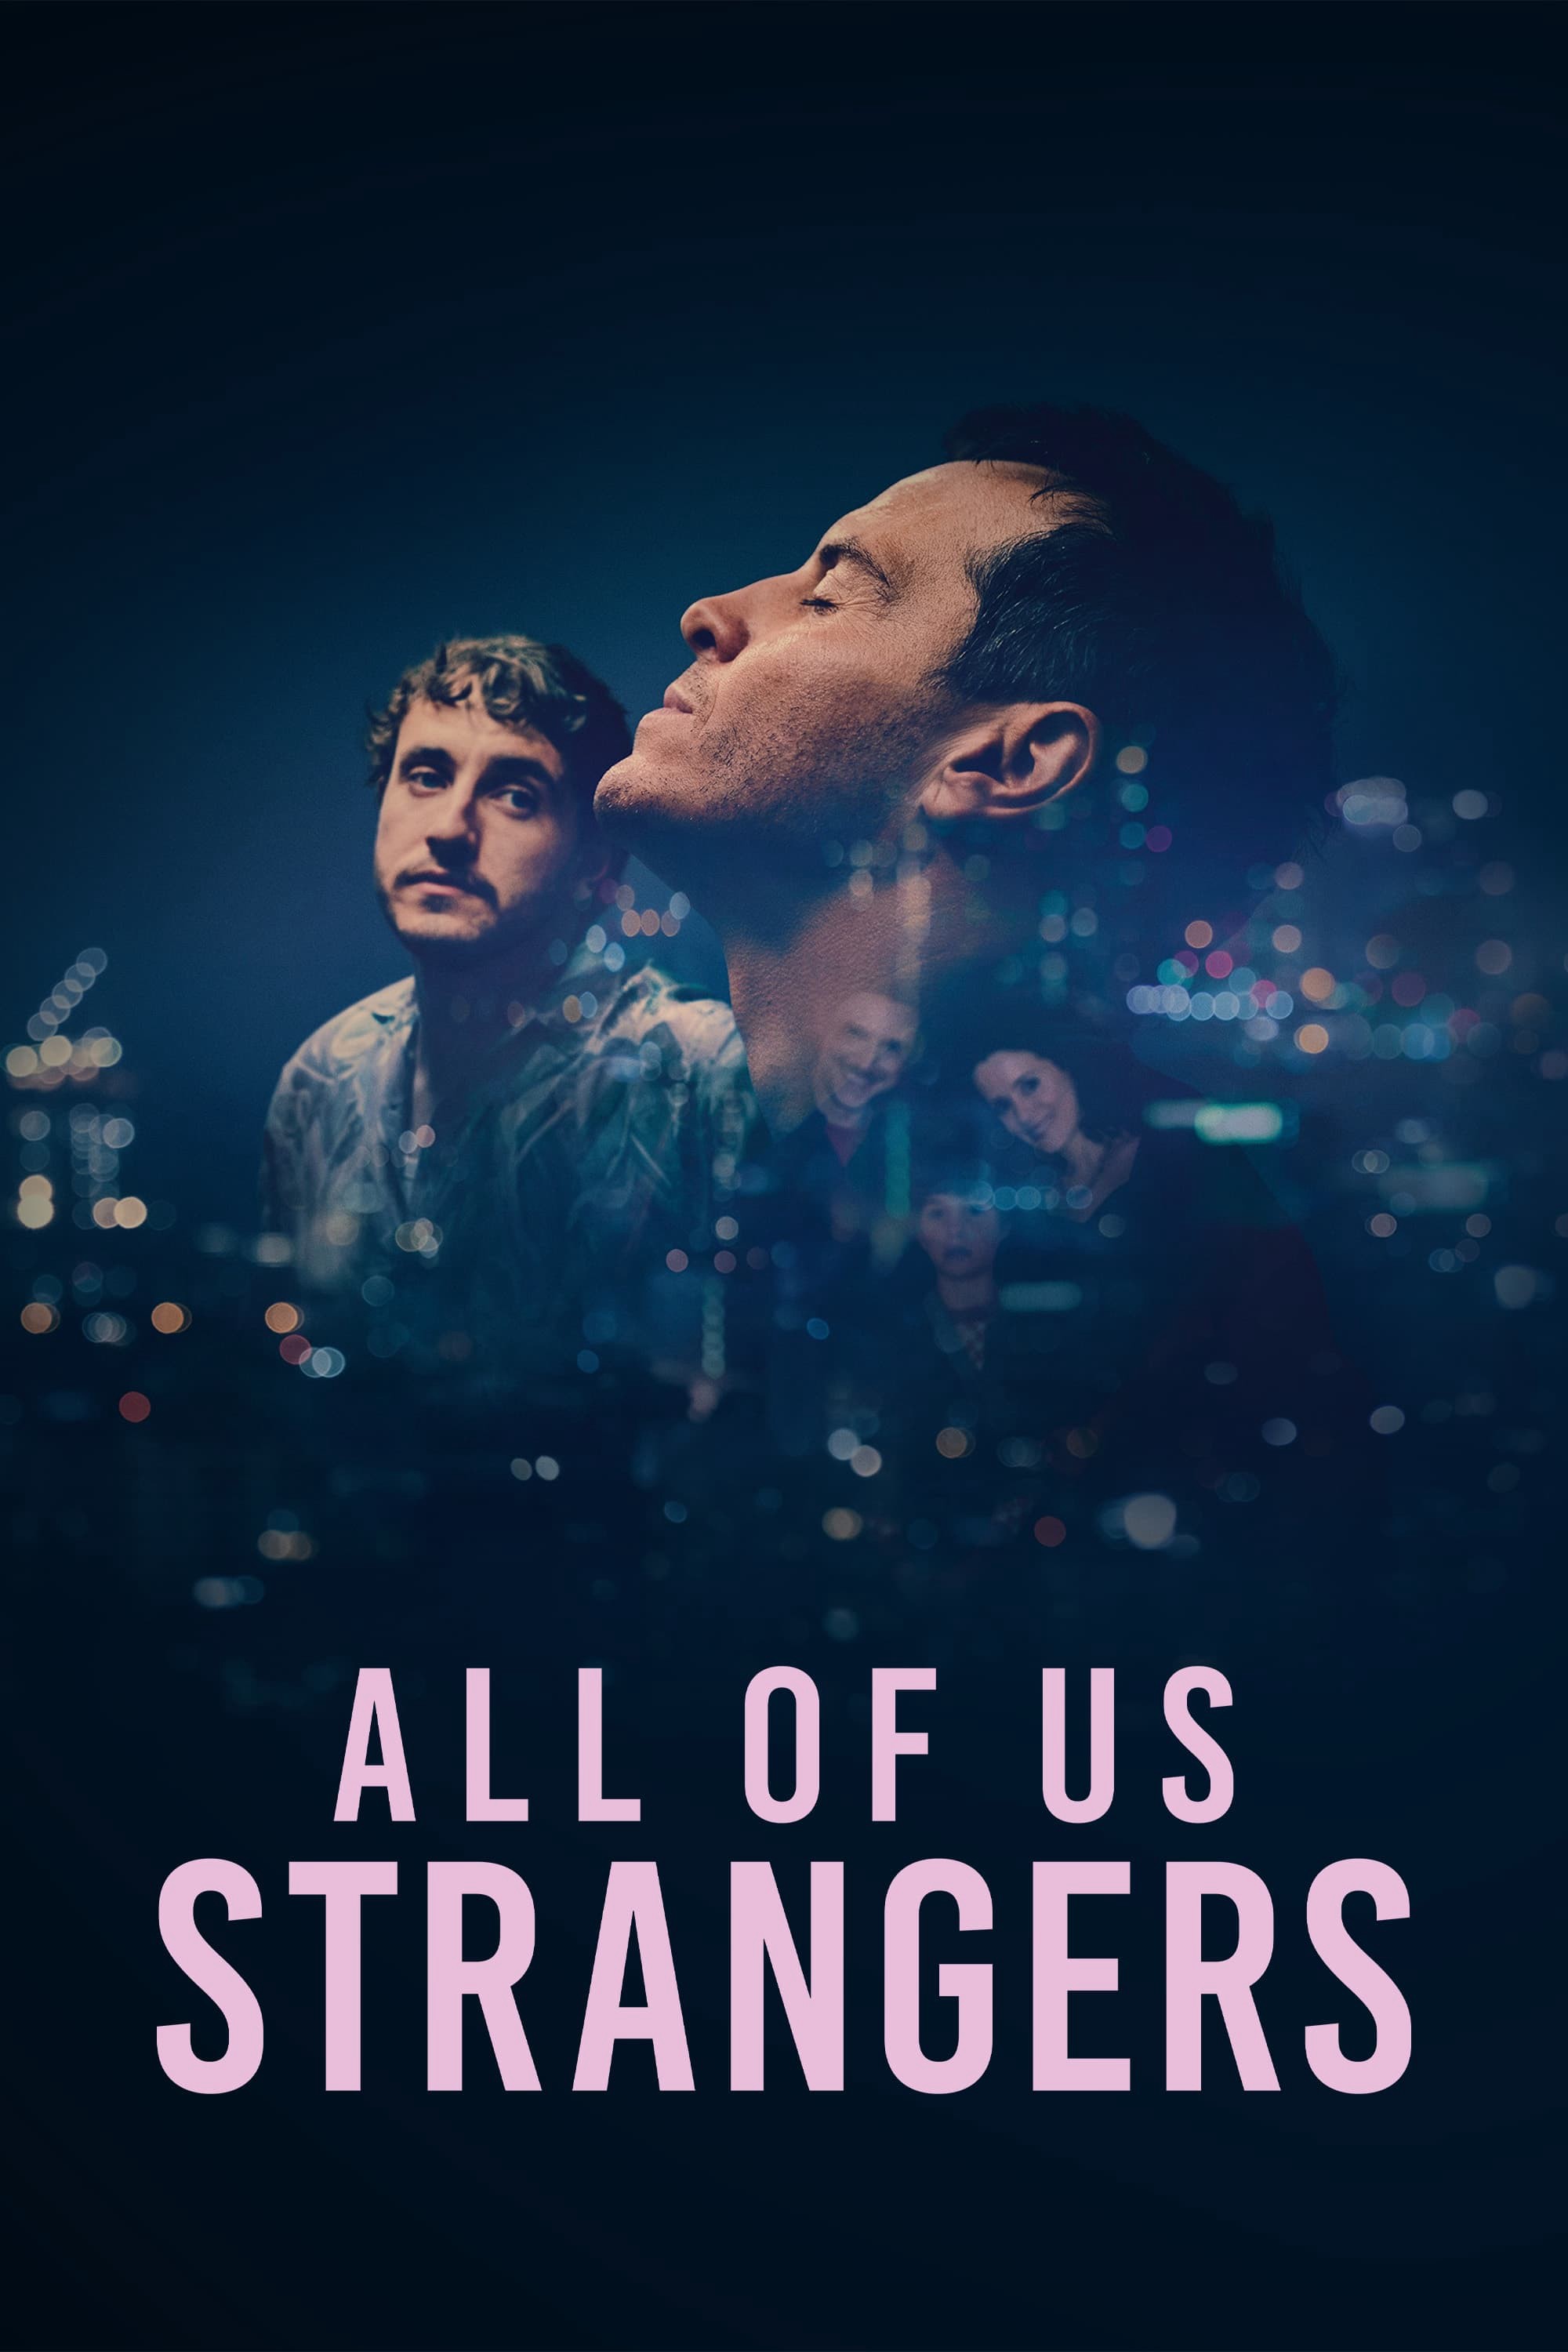 Tất cả chúng ta đều là người lạ - Tất cả chúng ta đều là người lạ